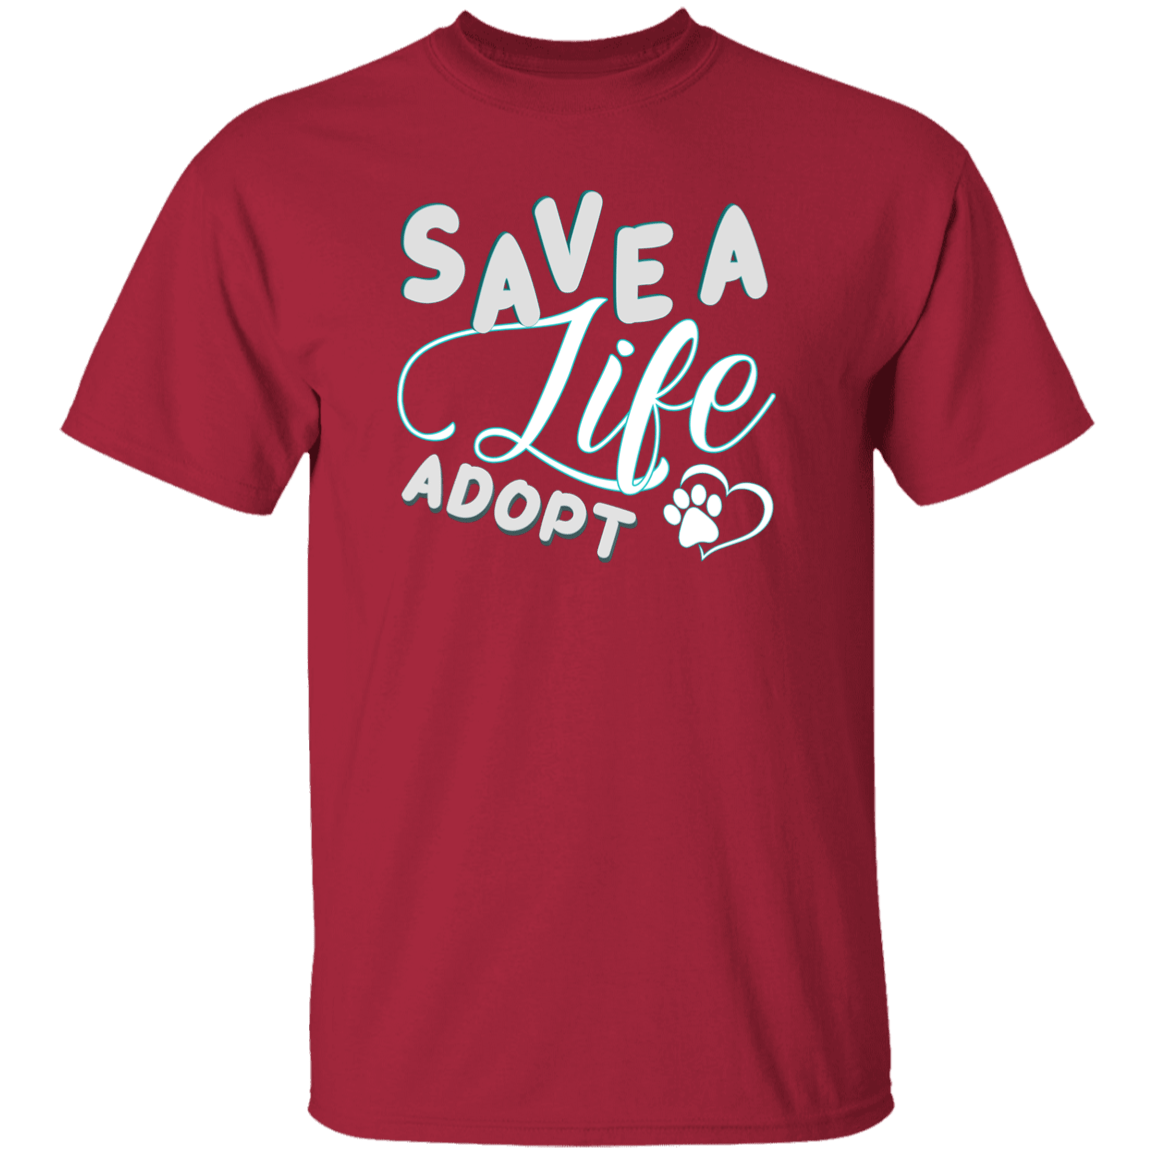 Save A Life Adopt - T Shirt.